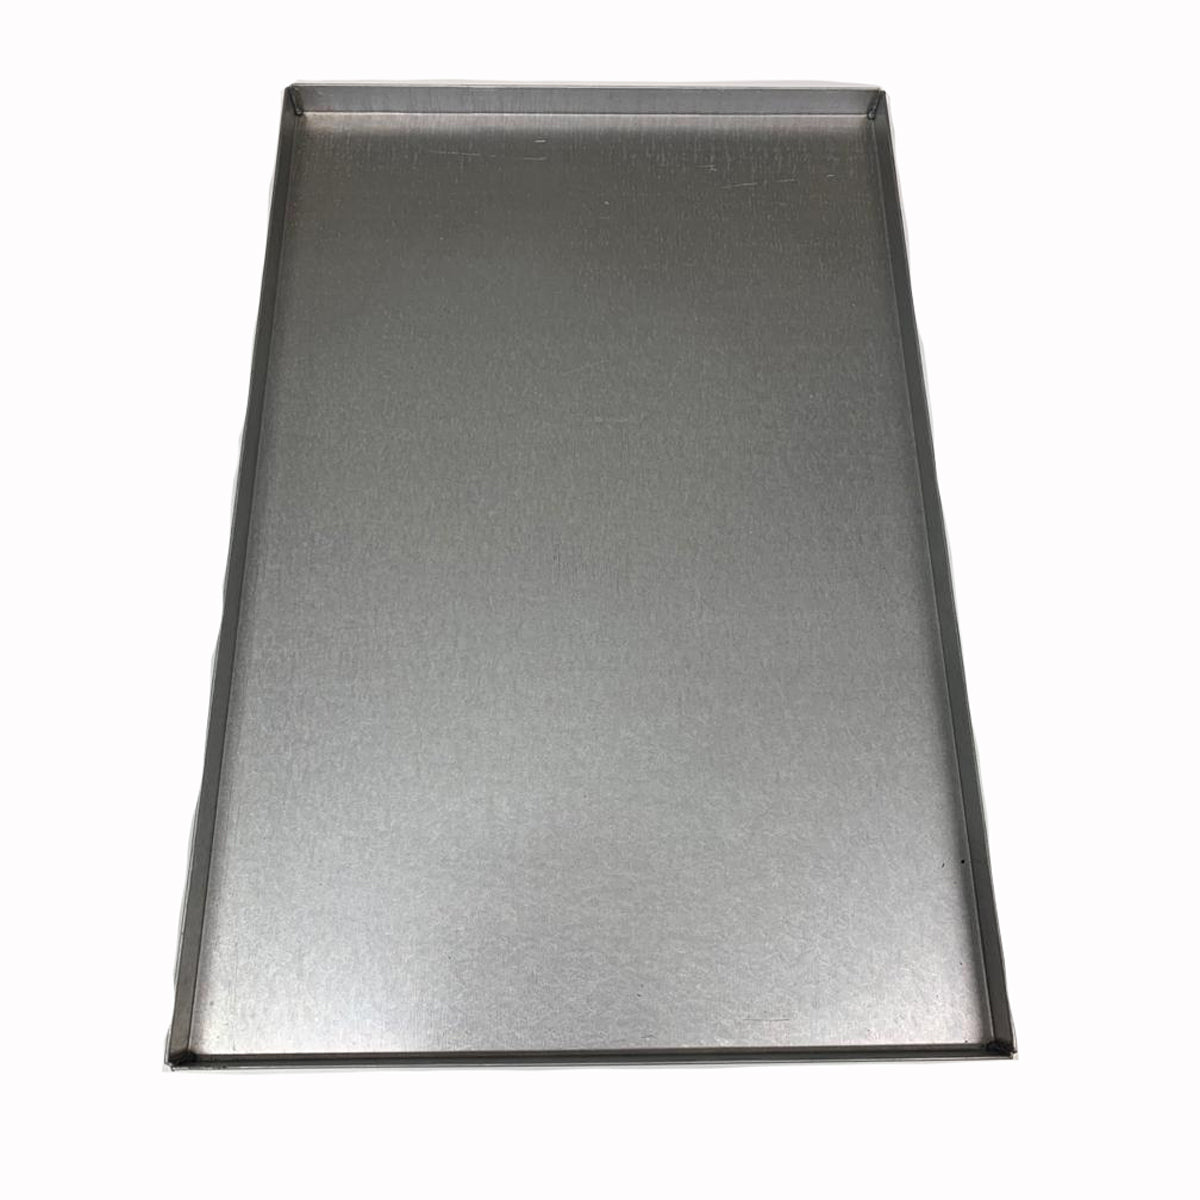 Aluminized steel sheet tray